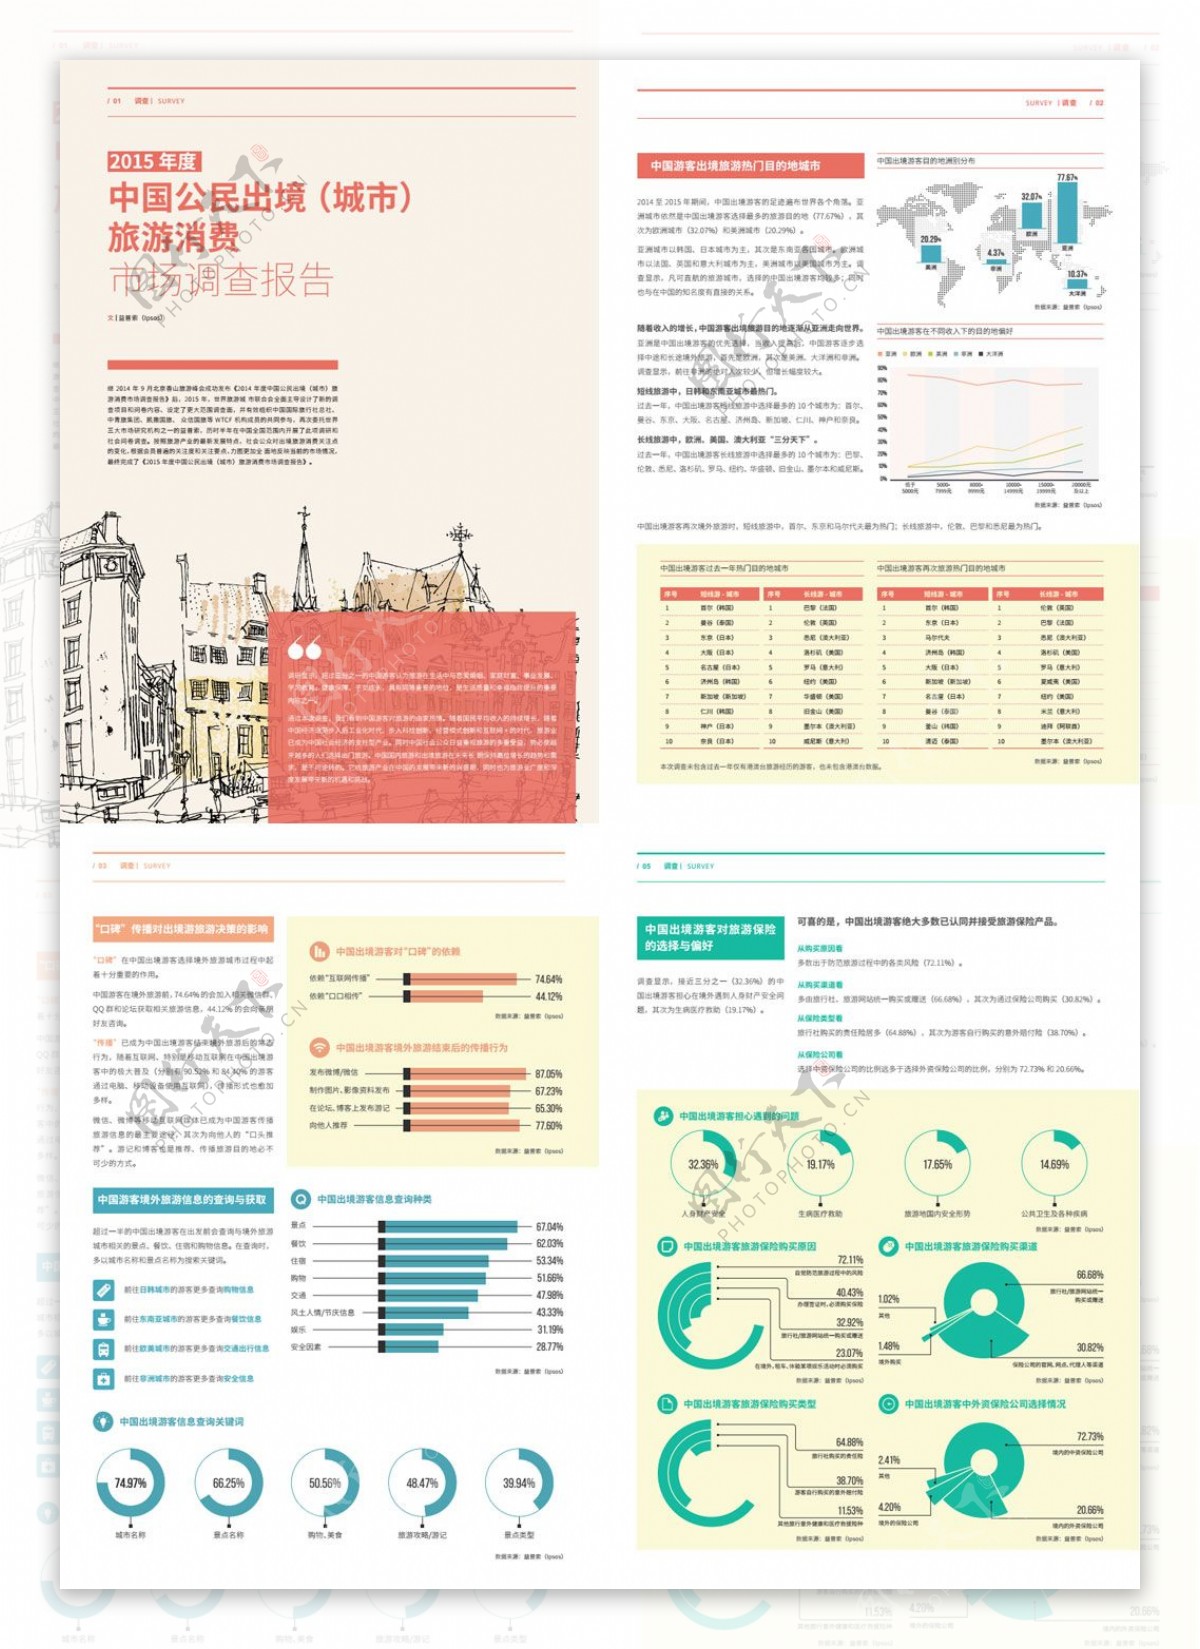 2015年度中国公民出境城市旅游消费调查报告01.2016CHtravel0